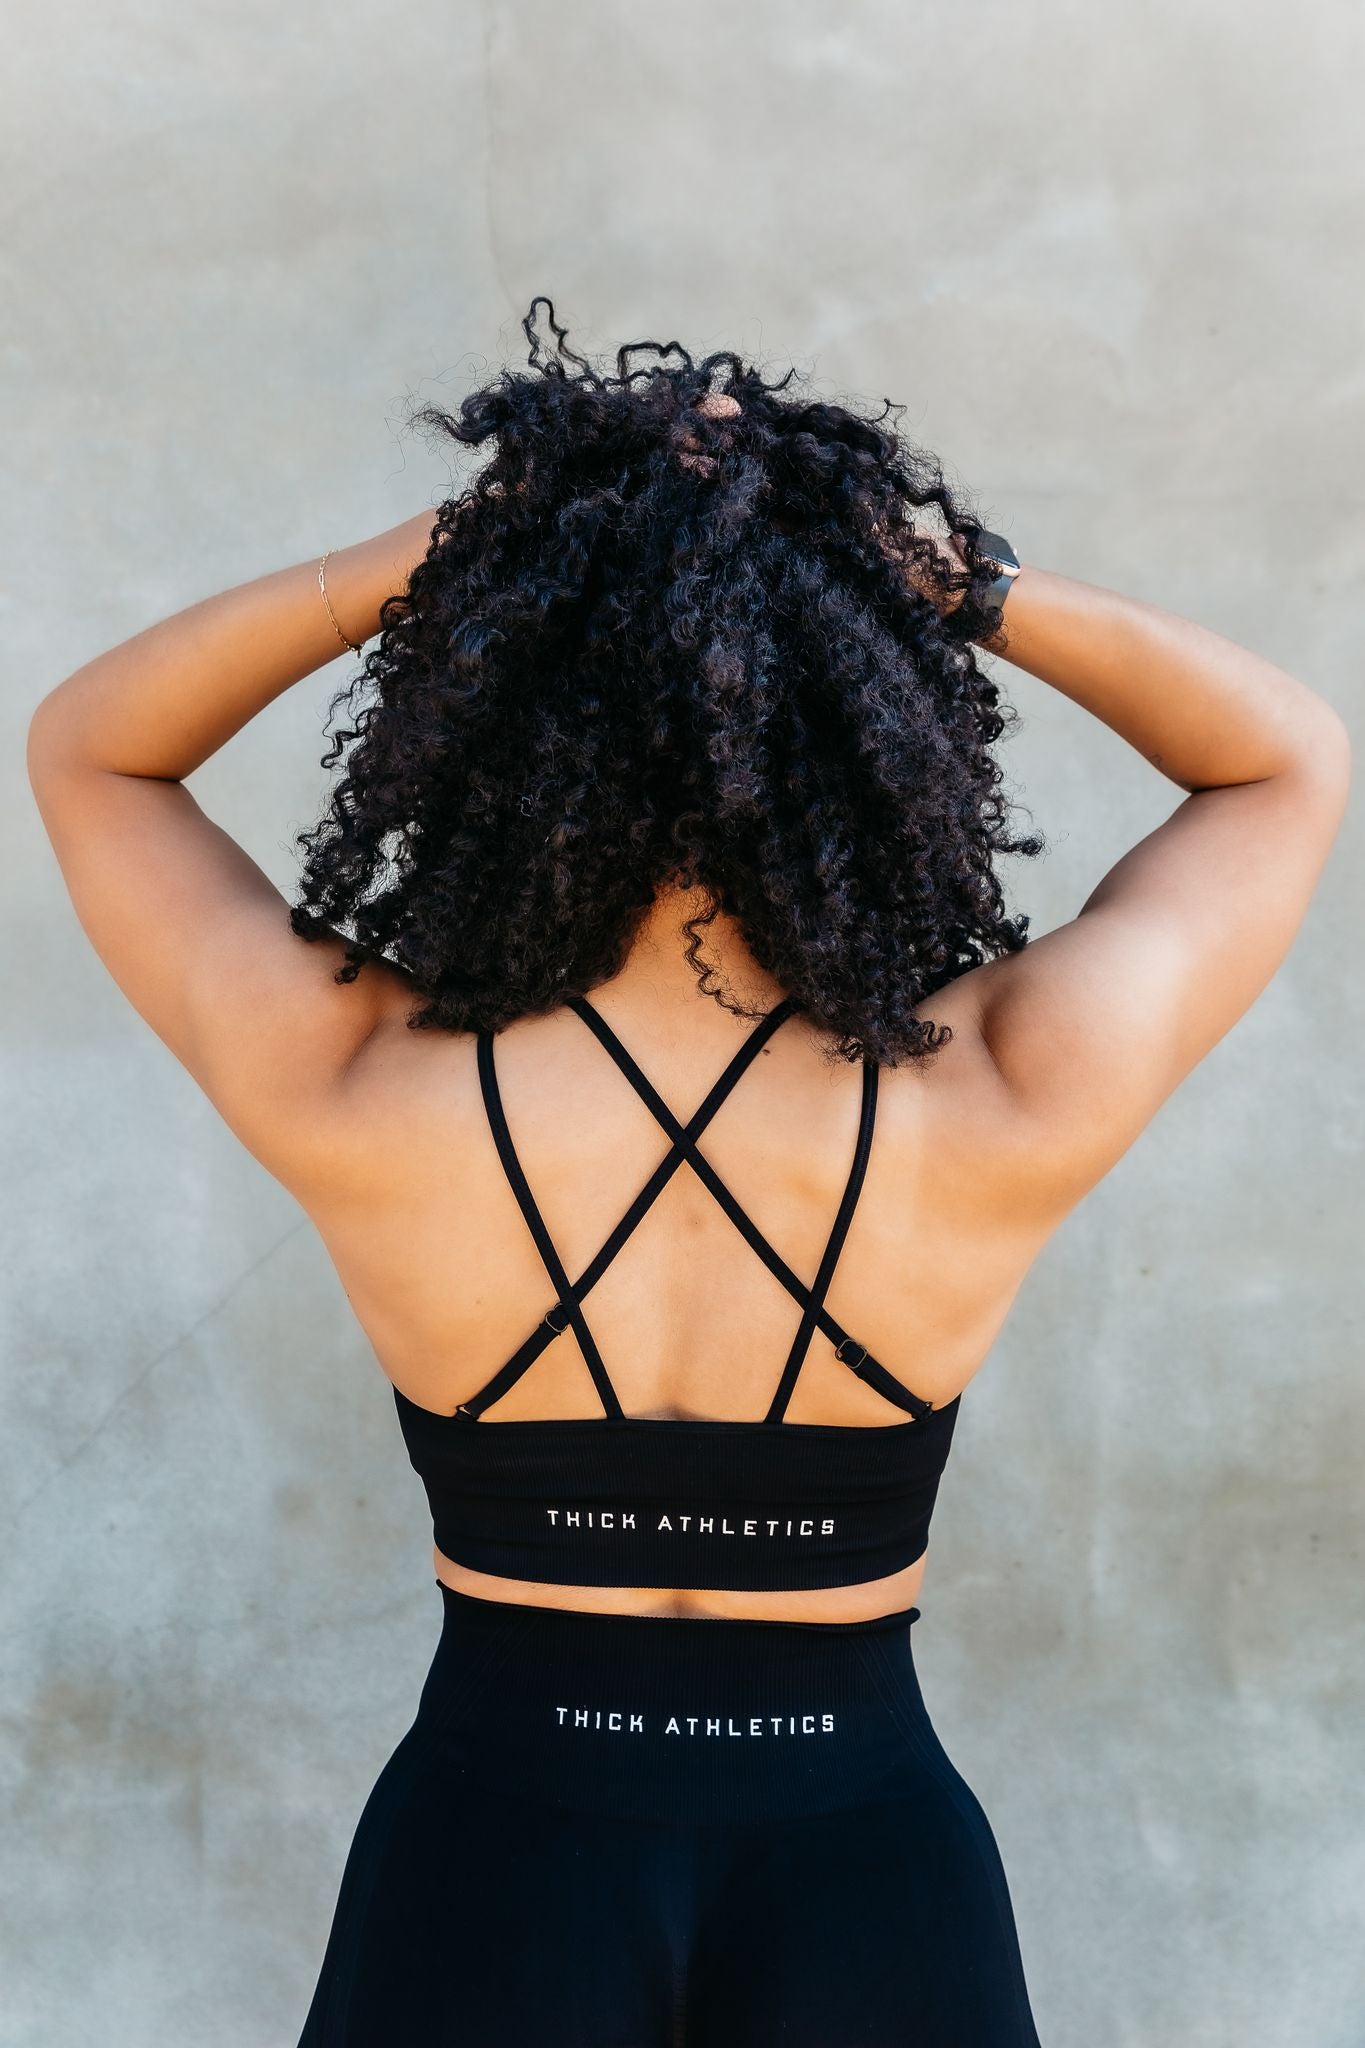 Model wearing black sports bra